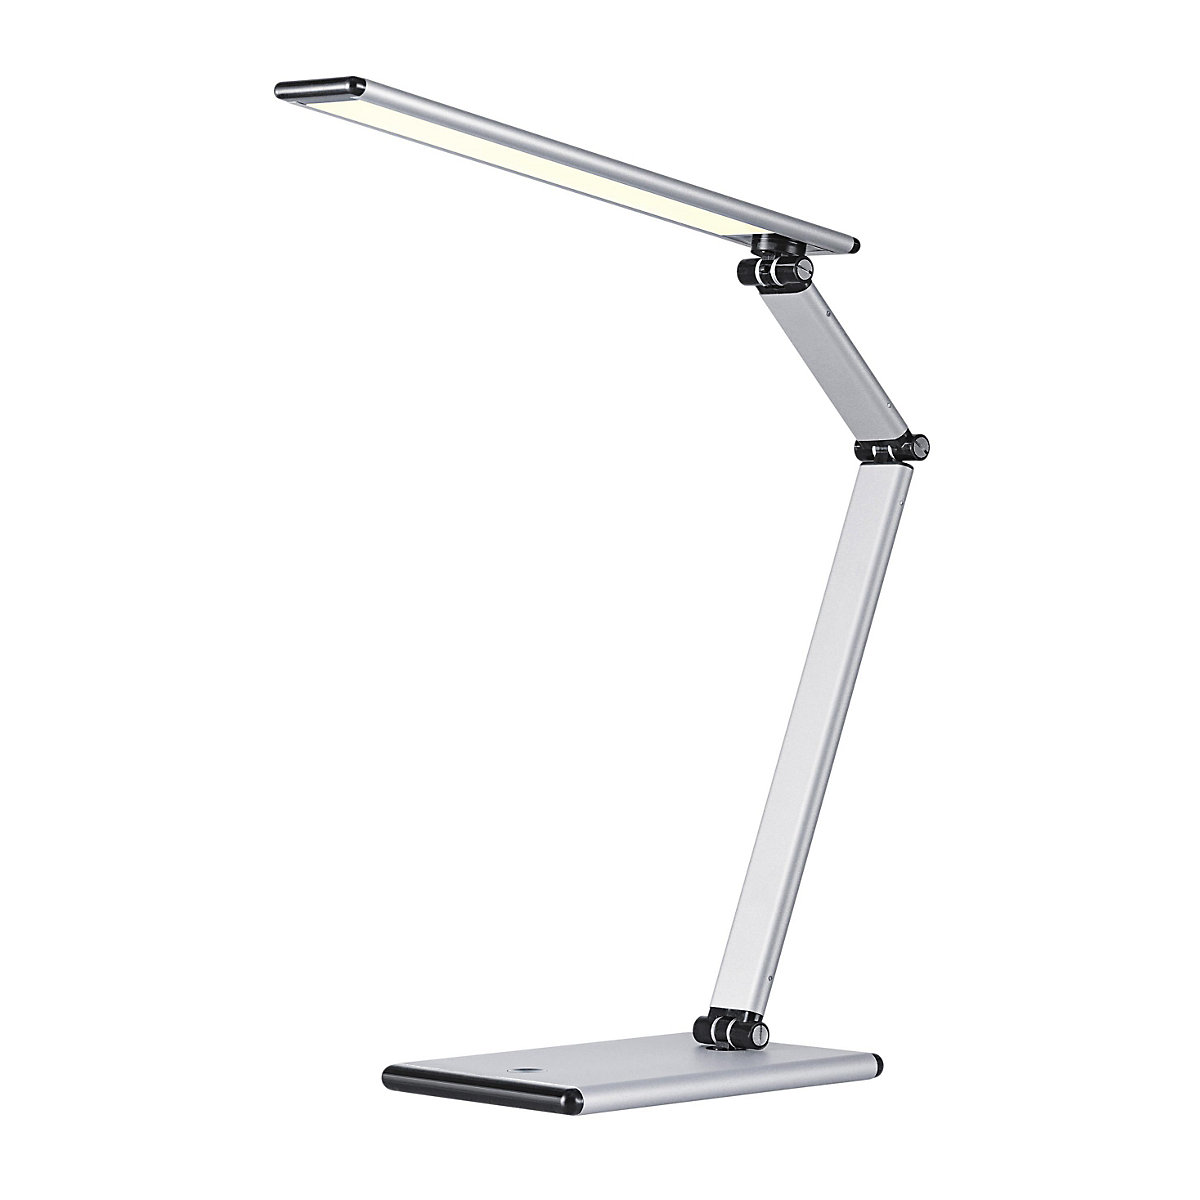 SLIM LED-es asztali lámpa – Hansa, 7 W-os LED-izzókkal, ezüst